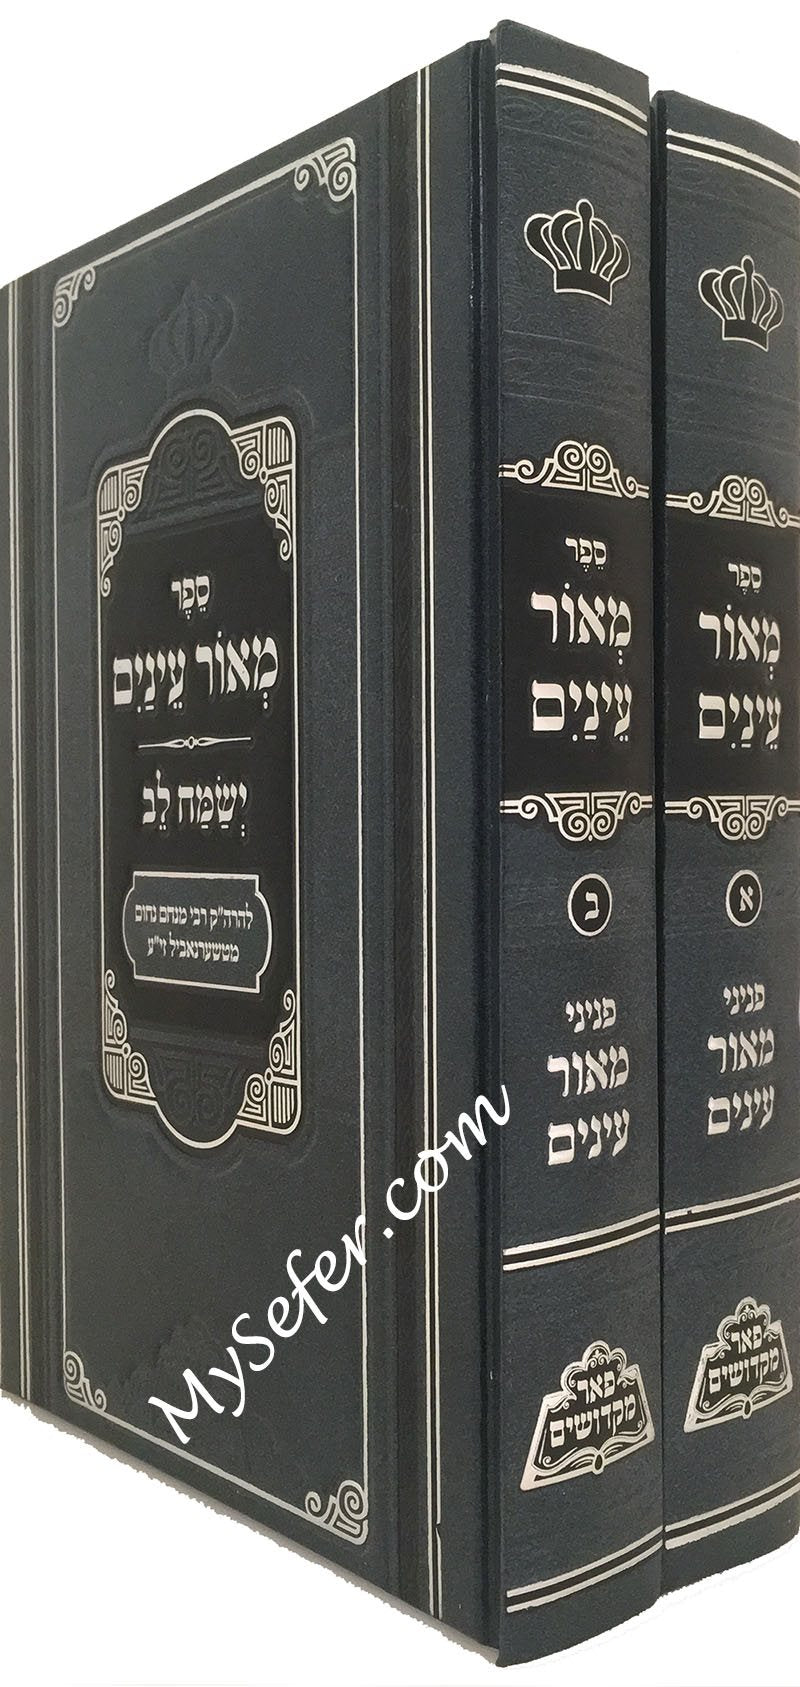 Meor Einayim - 2 vol.Pe'er Mikdoshim Edition